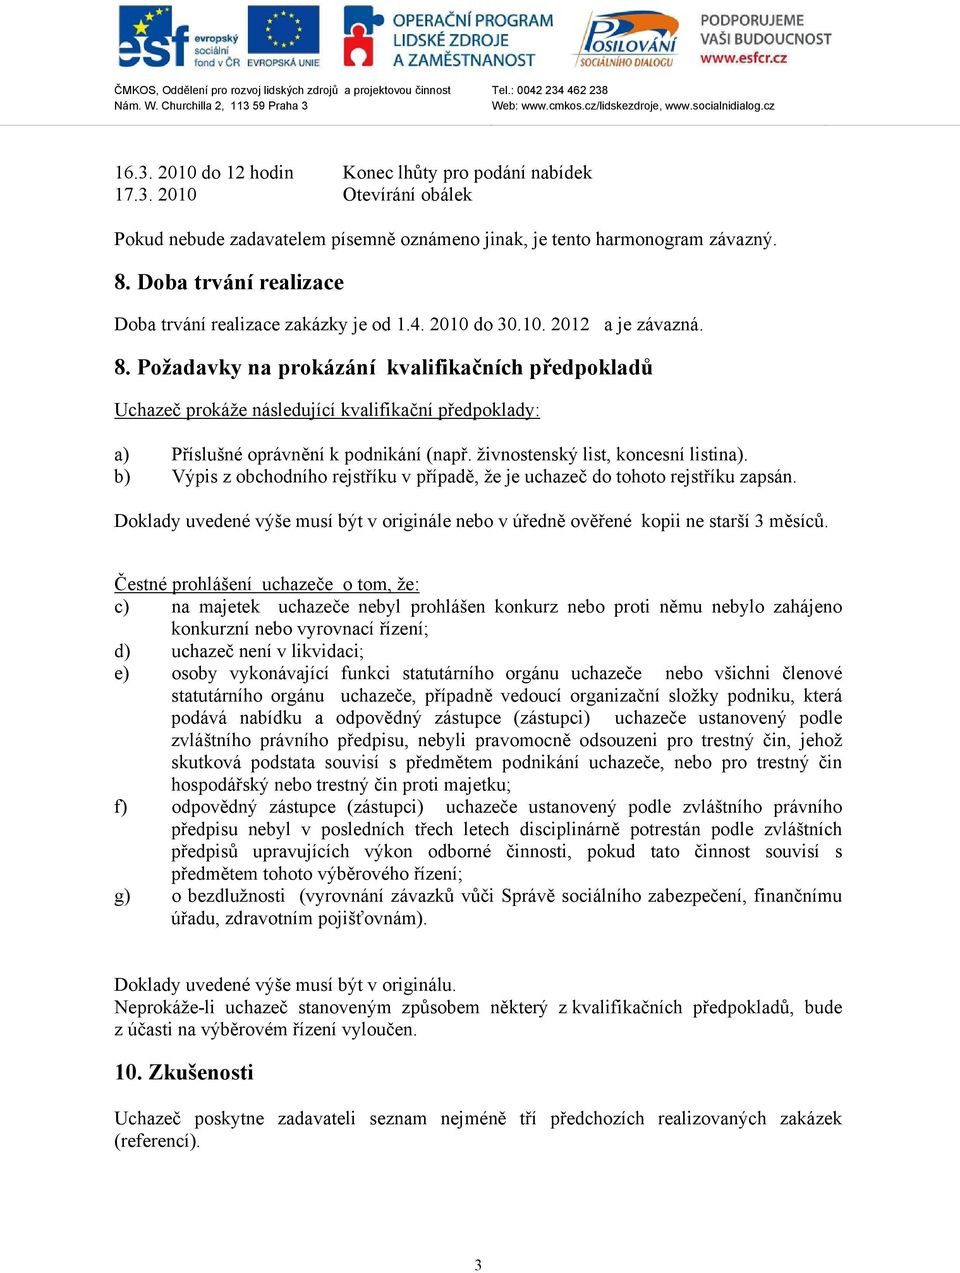 Požadavky na prokázání kvalifikačních předpokladů Uchazeč prokáže následující kvalifikační předpoklady: a) Příslušné oprávnění k podnikání (např. živnostenský list, koncesní listina).